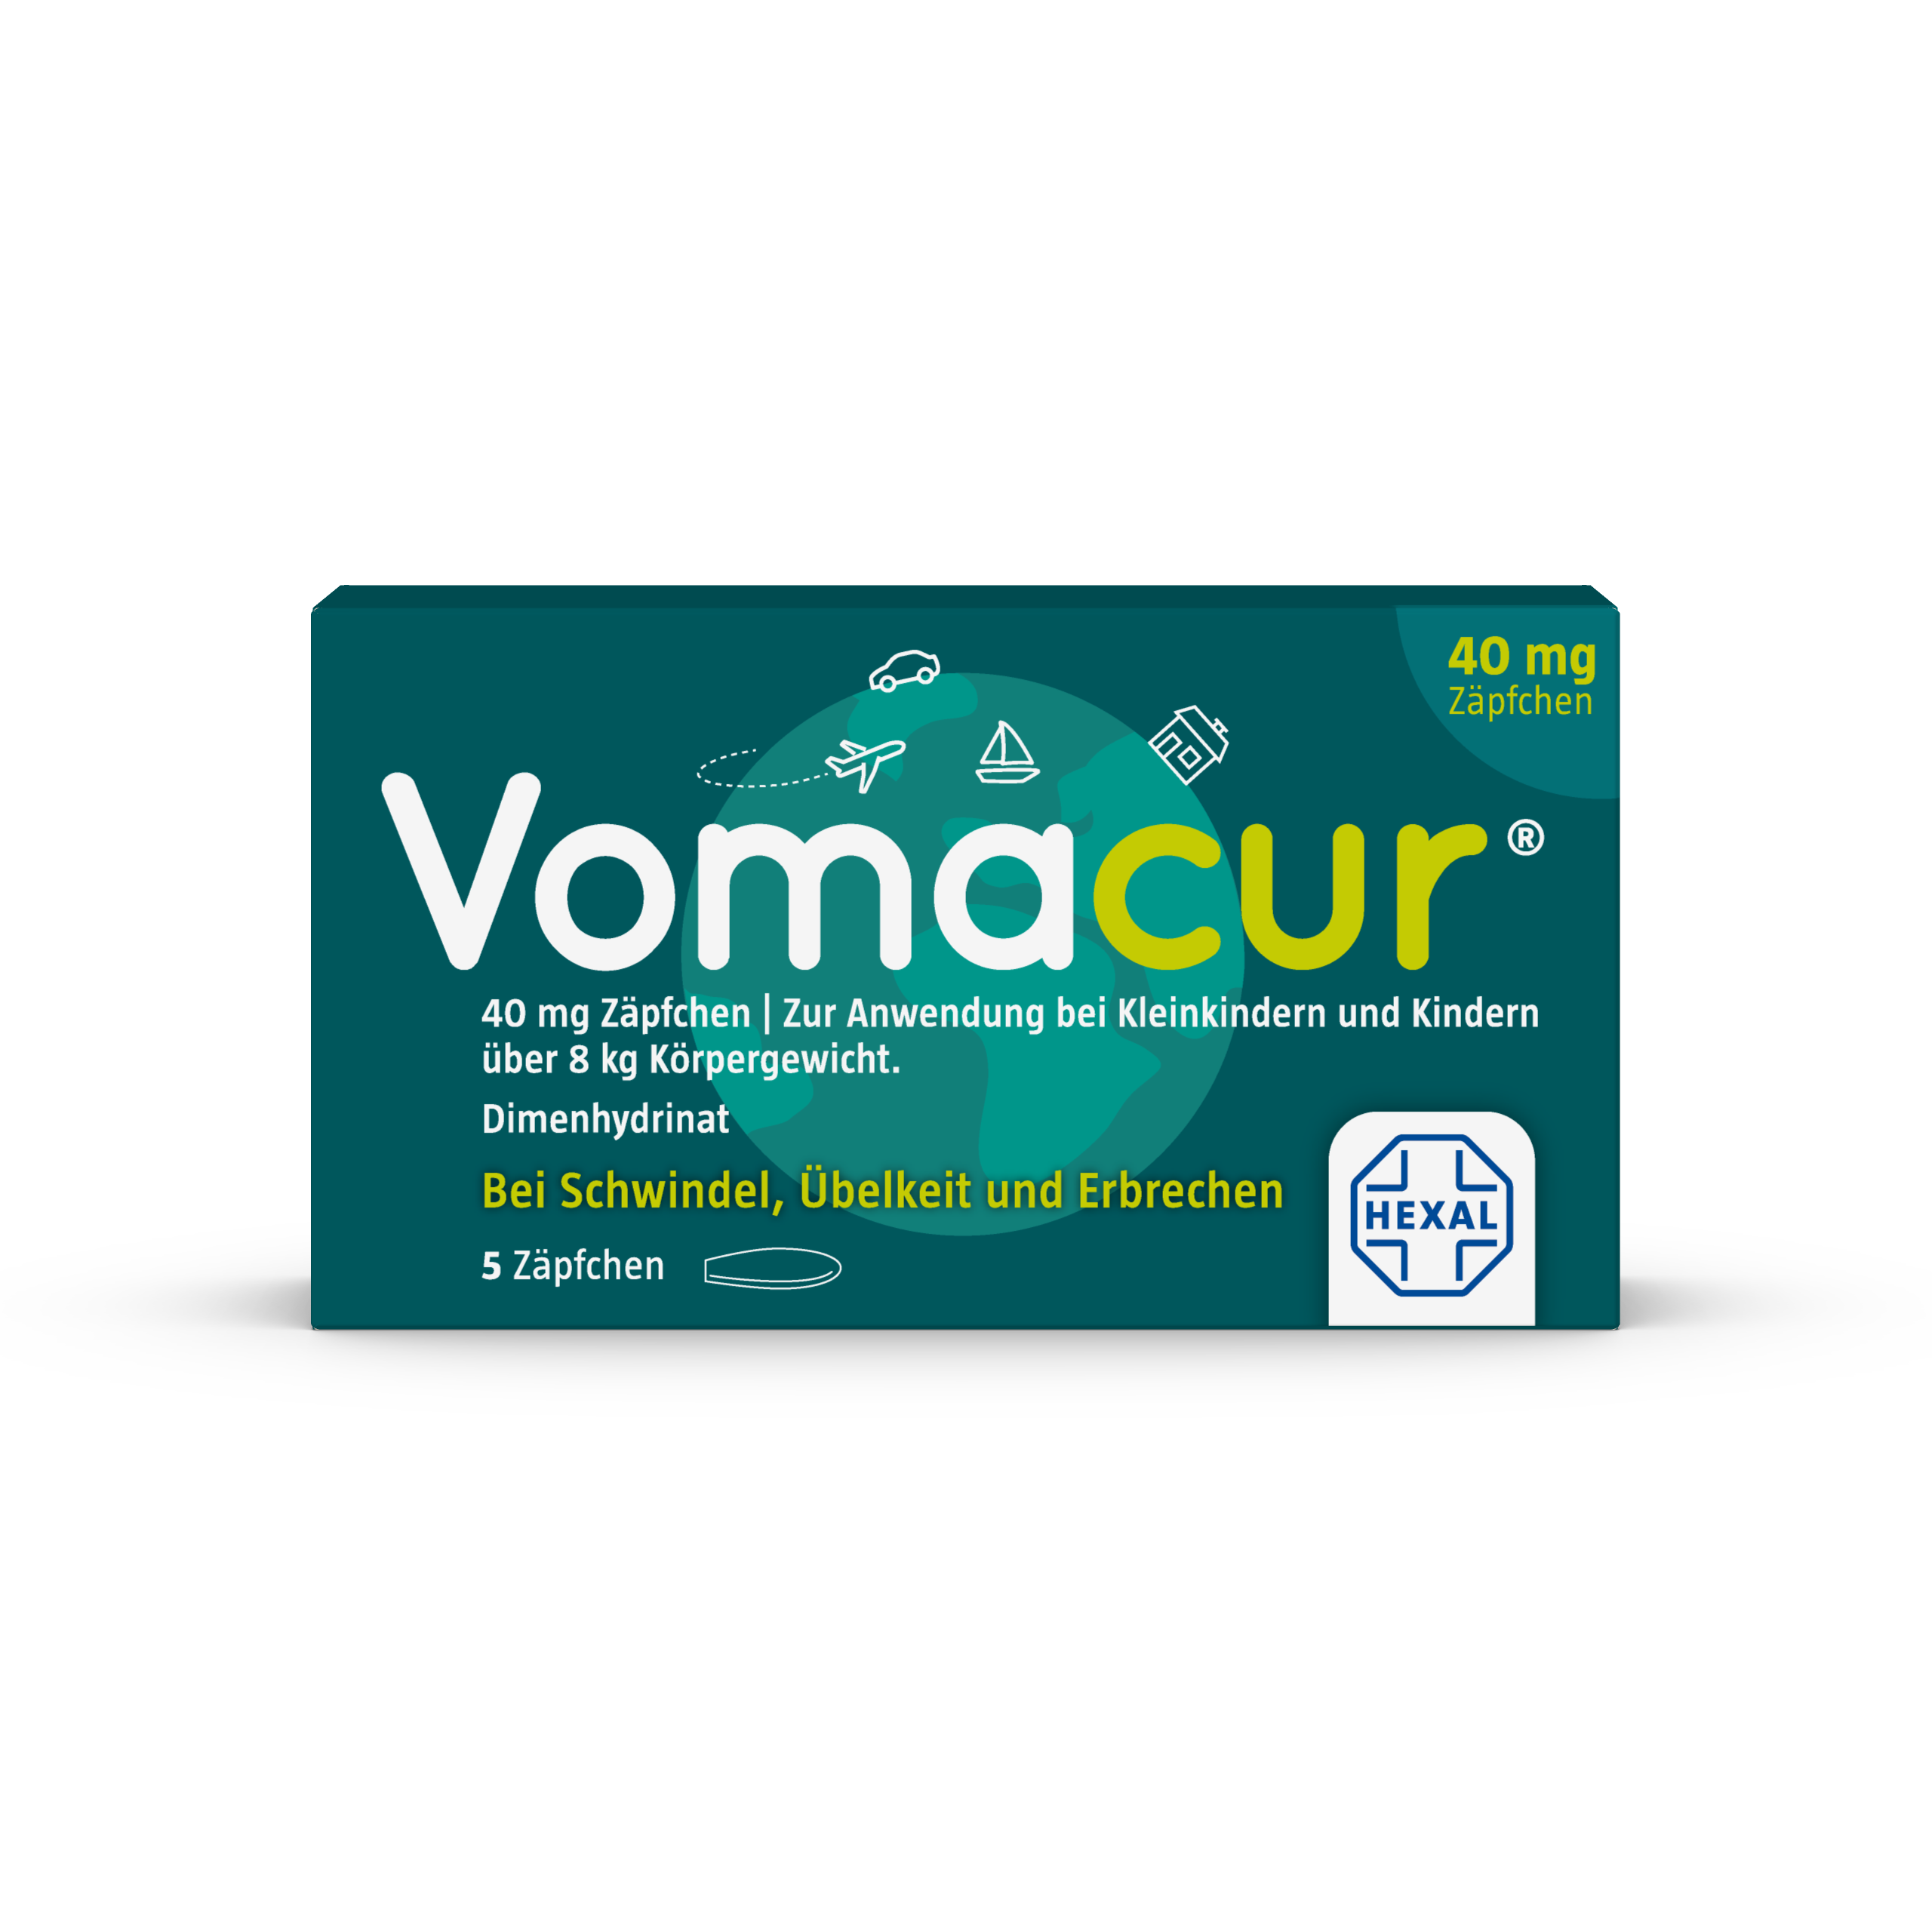 Vomacur 40 mg Zäpfchen (5 Stk)